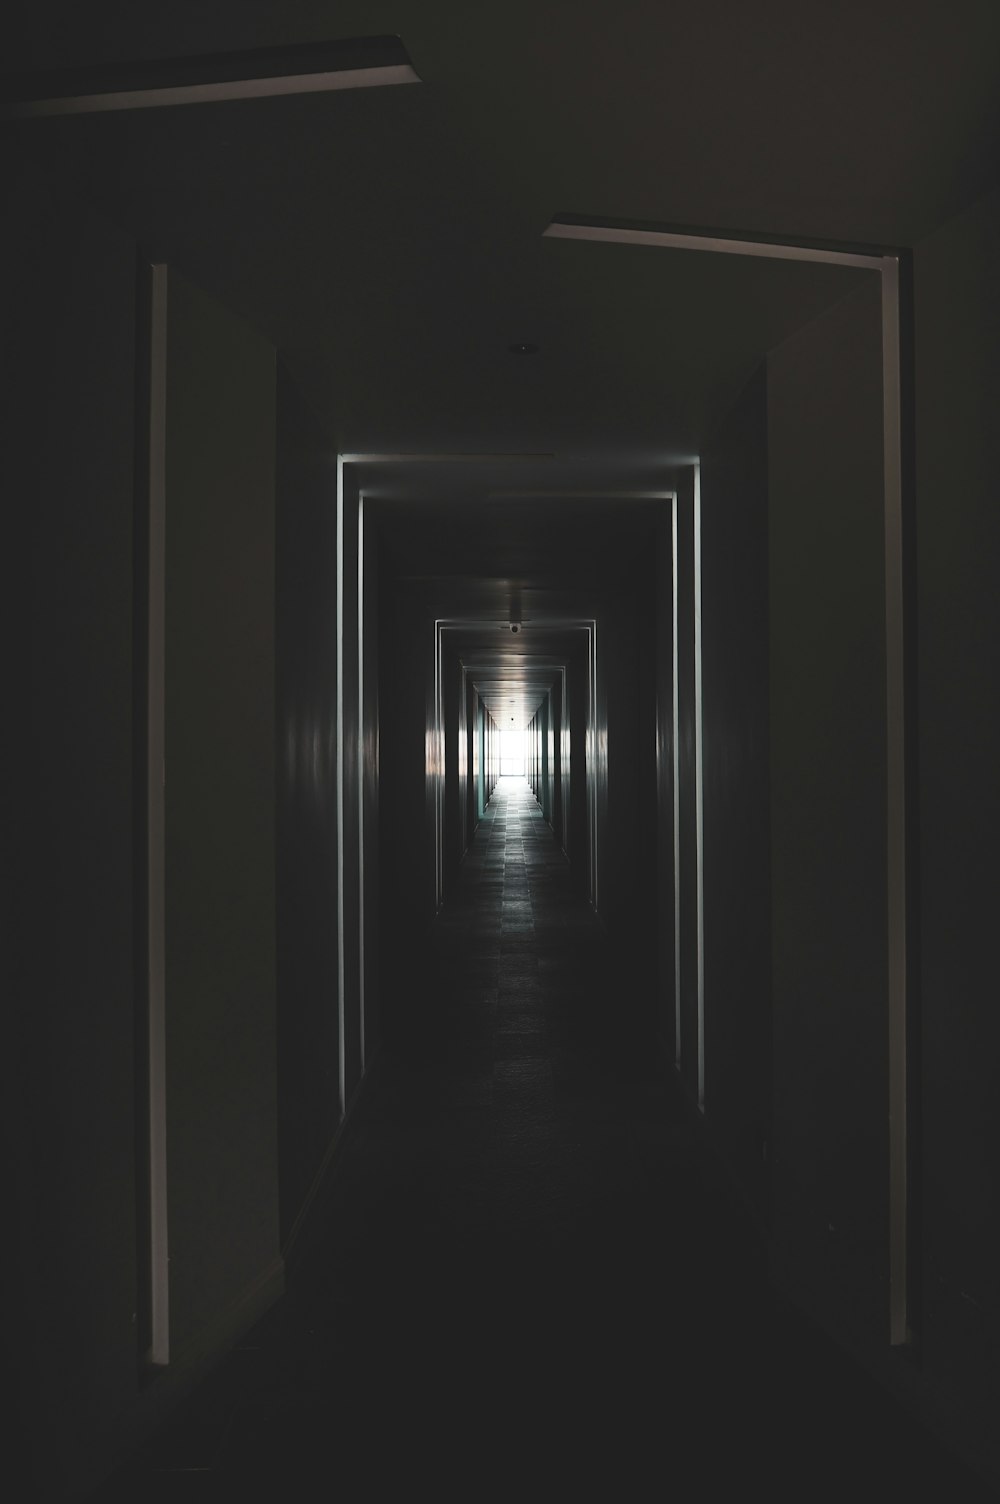 Un pasillo con una luz encendida